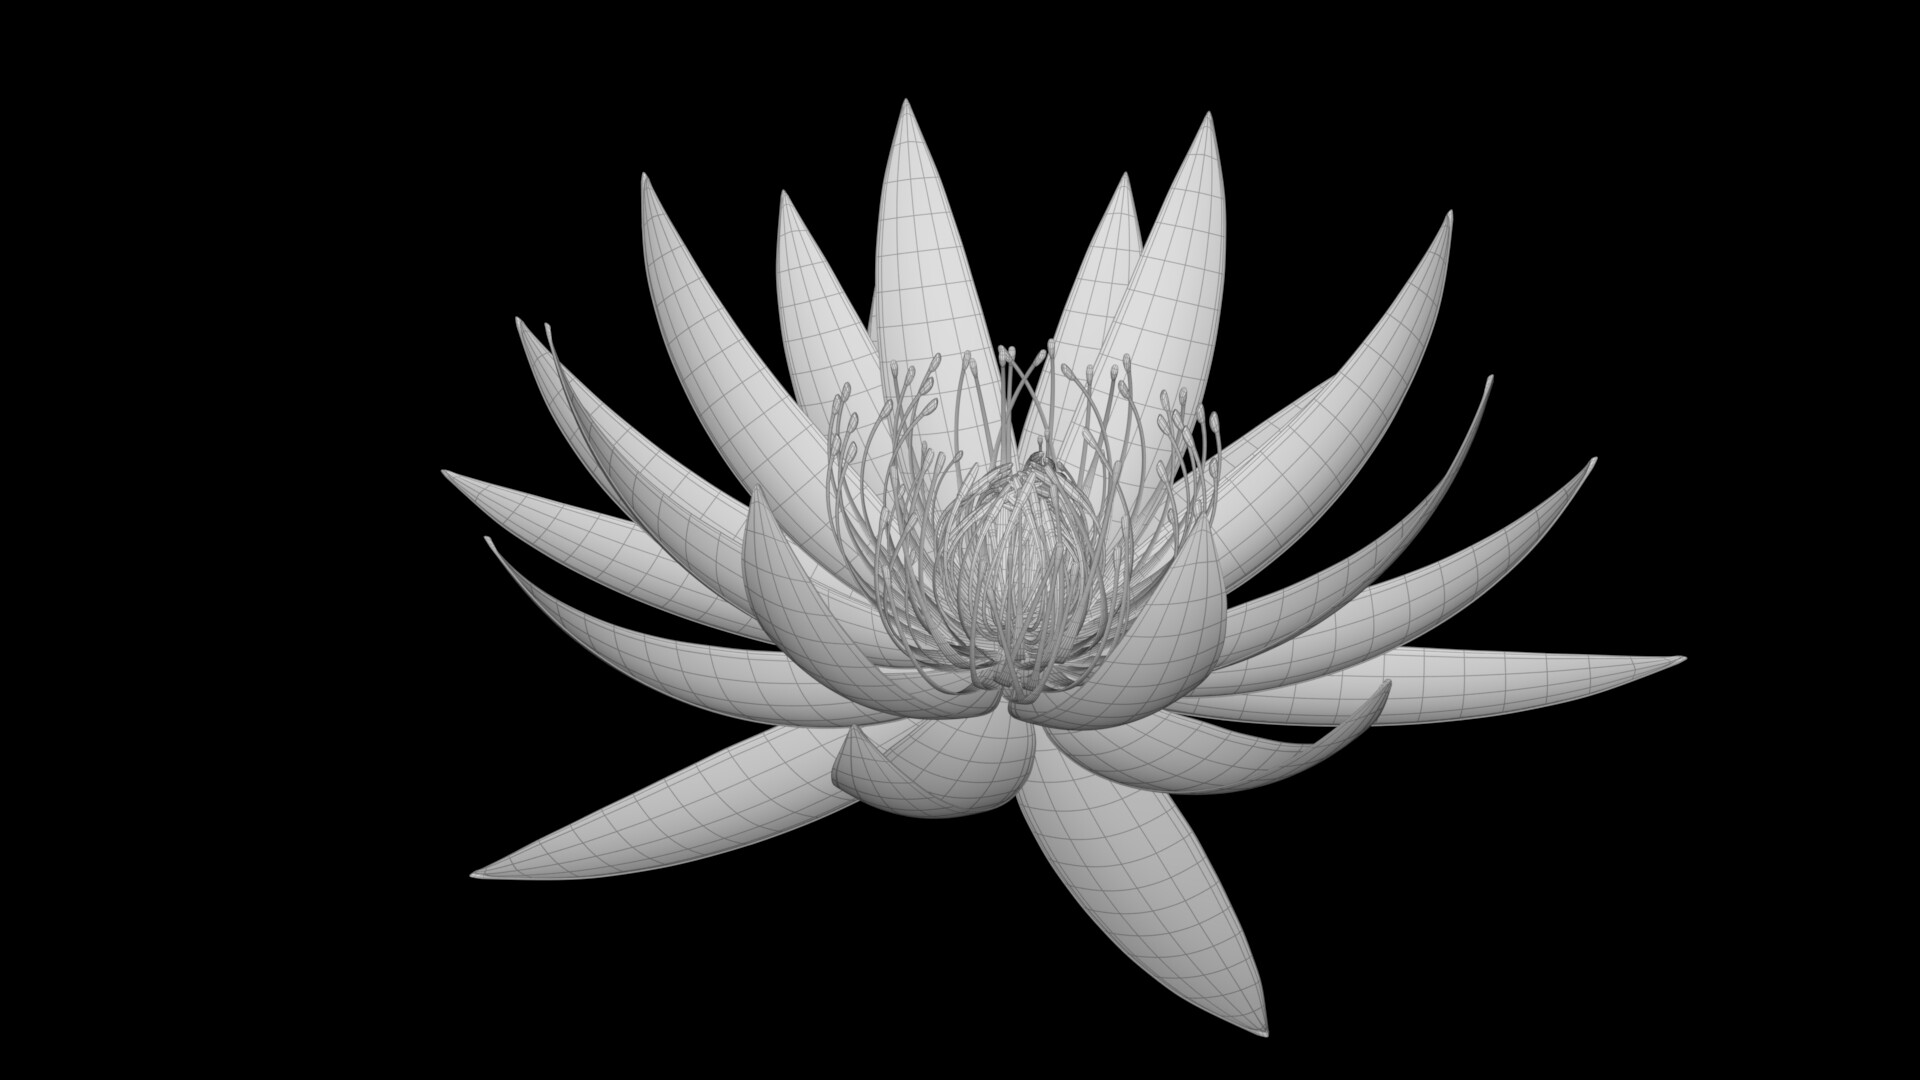 Hình vẽ hoa Sen trắng nền đen tuyệt đẹp